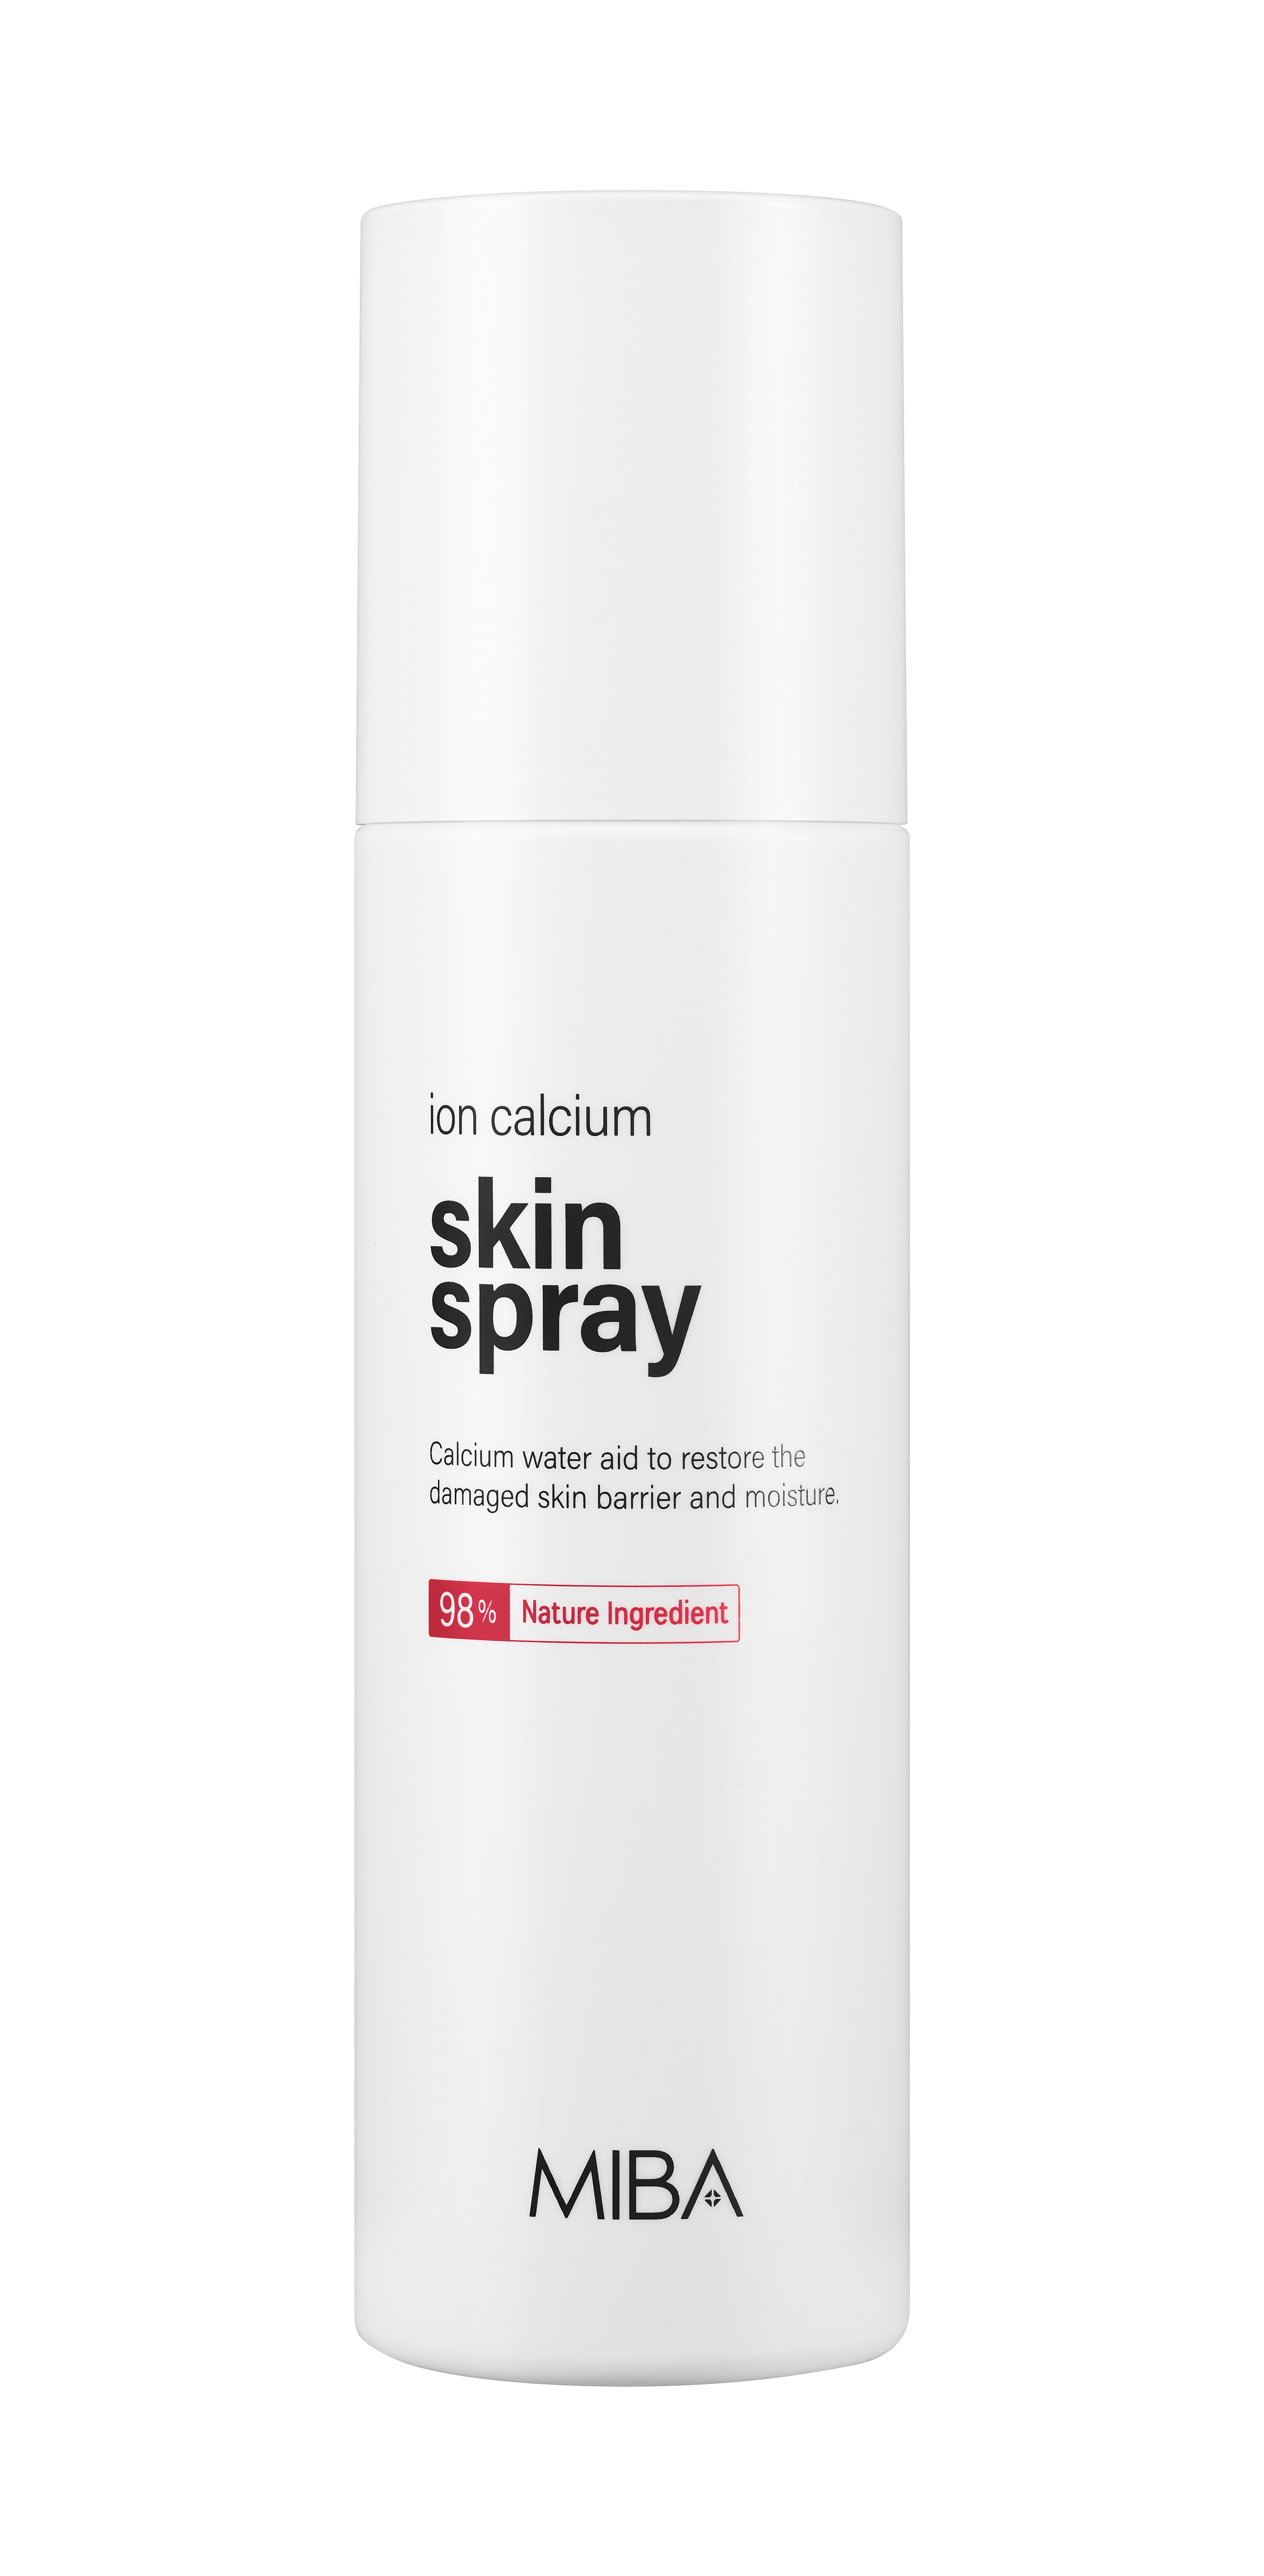 miba ion calcium skin spray